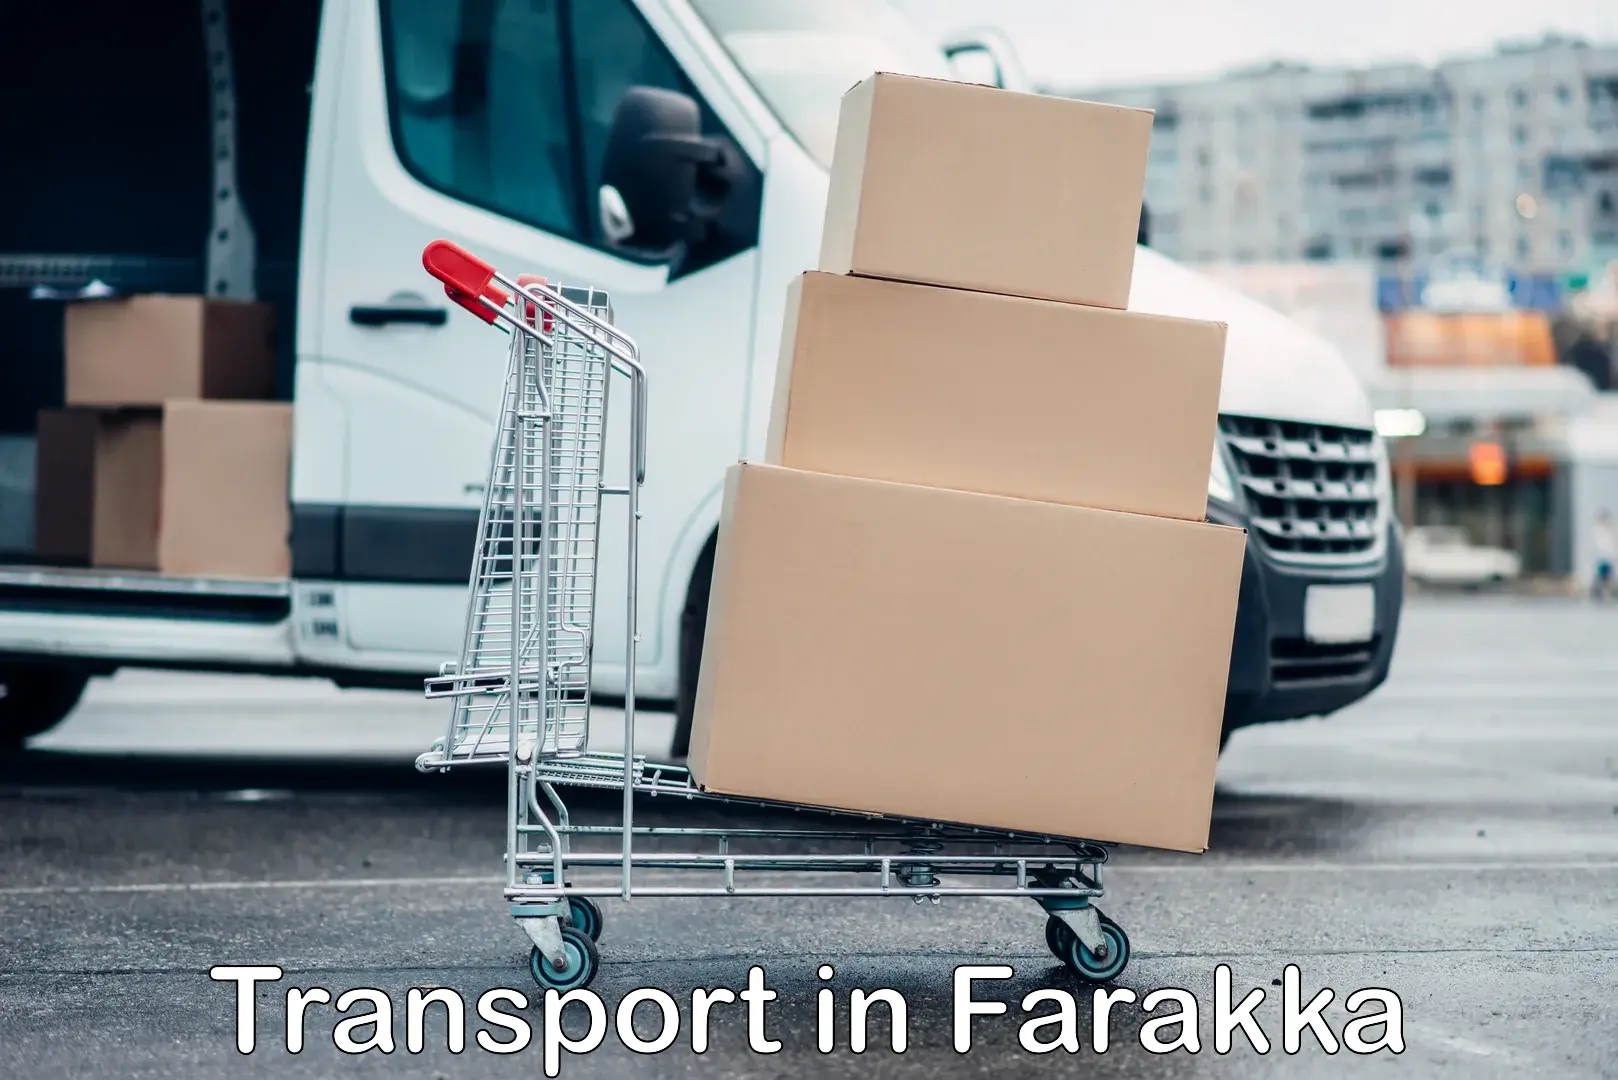 Lorry transport service in Farakka